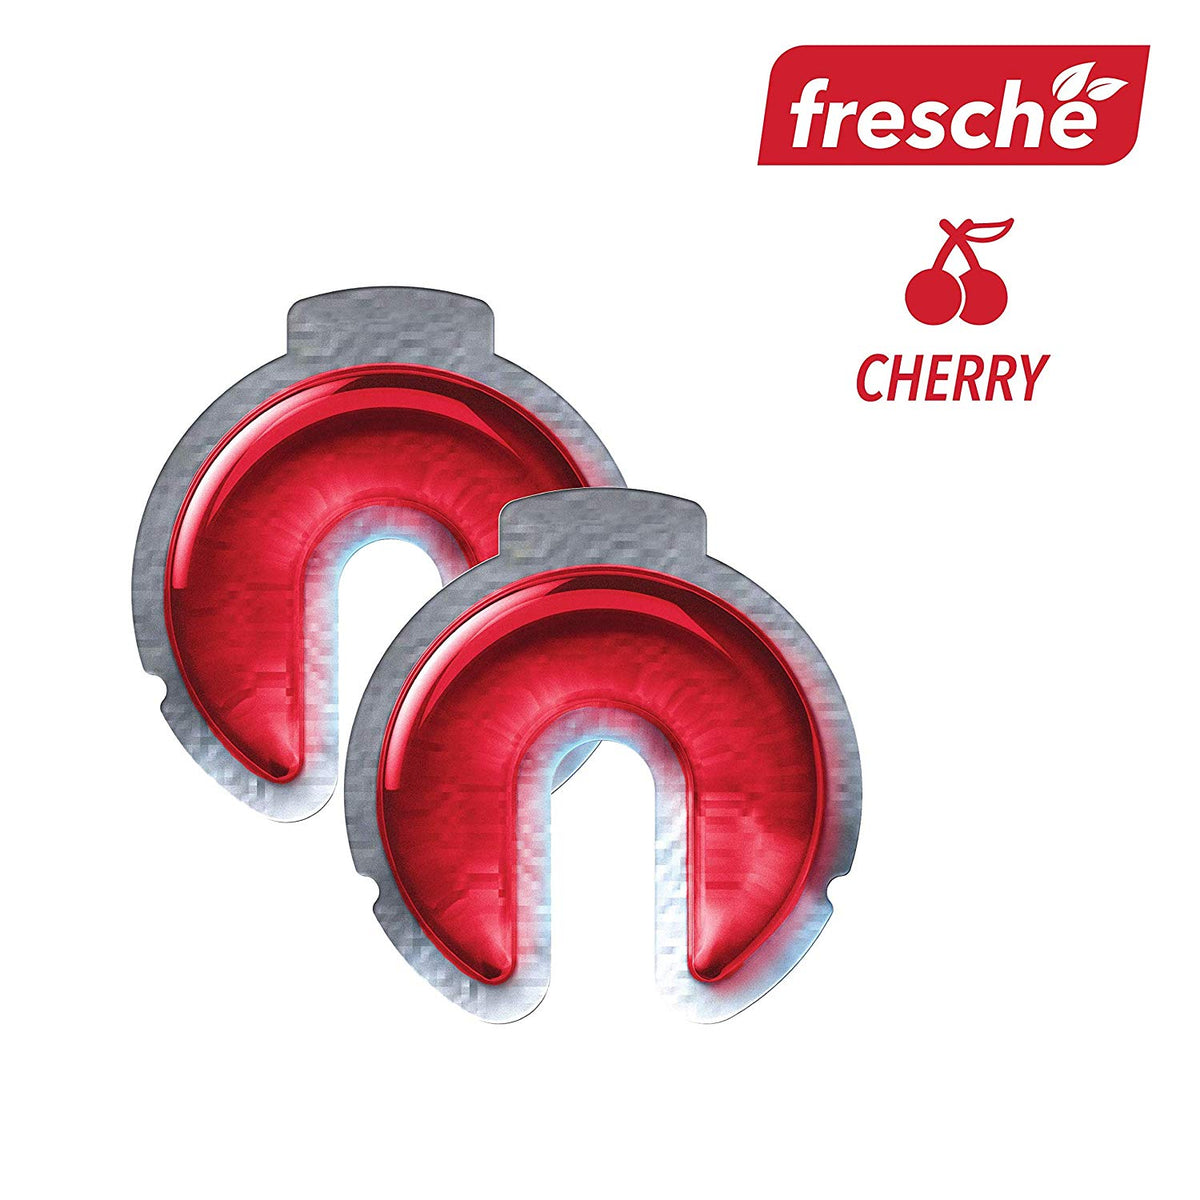 SCOSCHE Air Freshener Refill Cartridges for Fresche Mounts - 2 Packs - Cherry